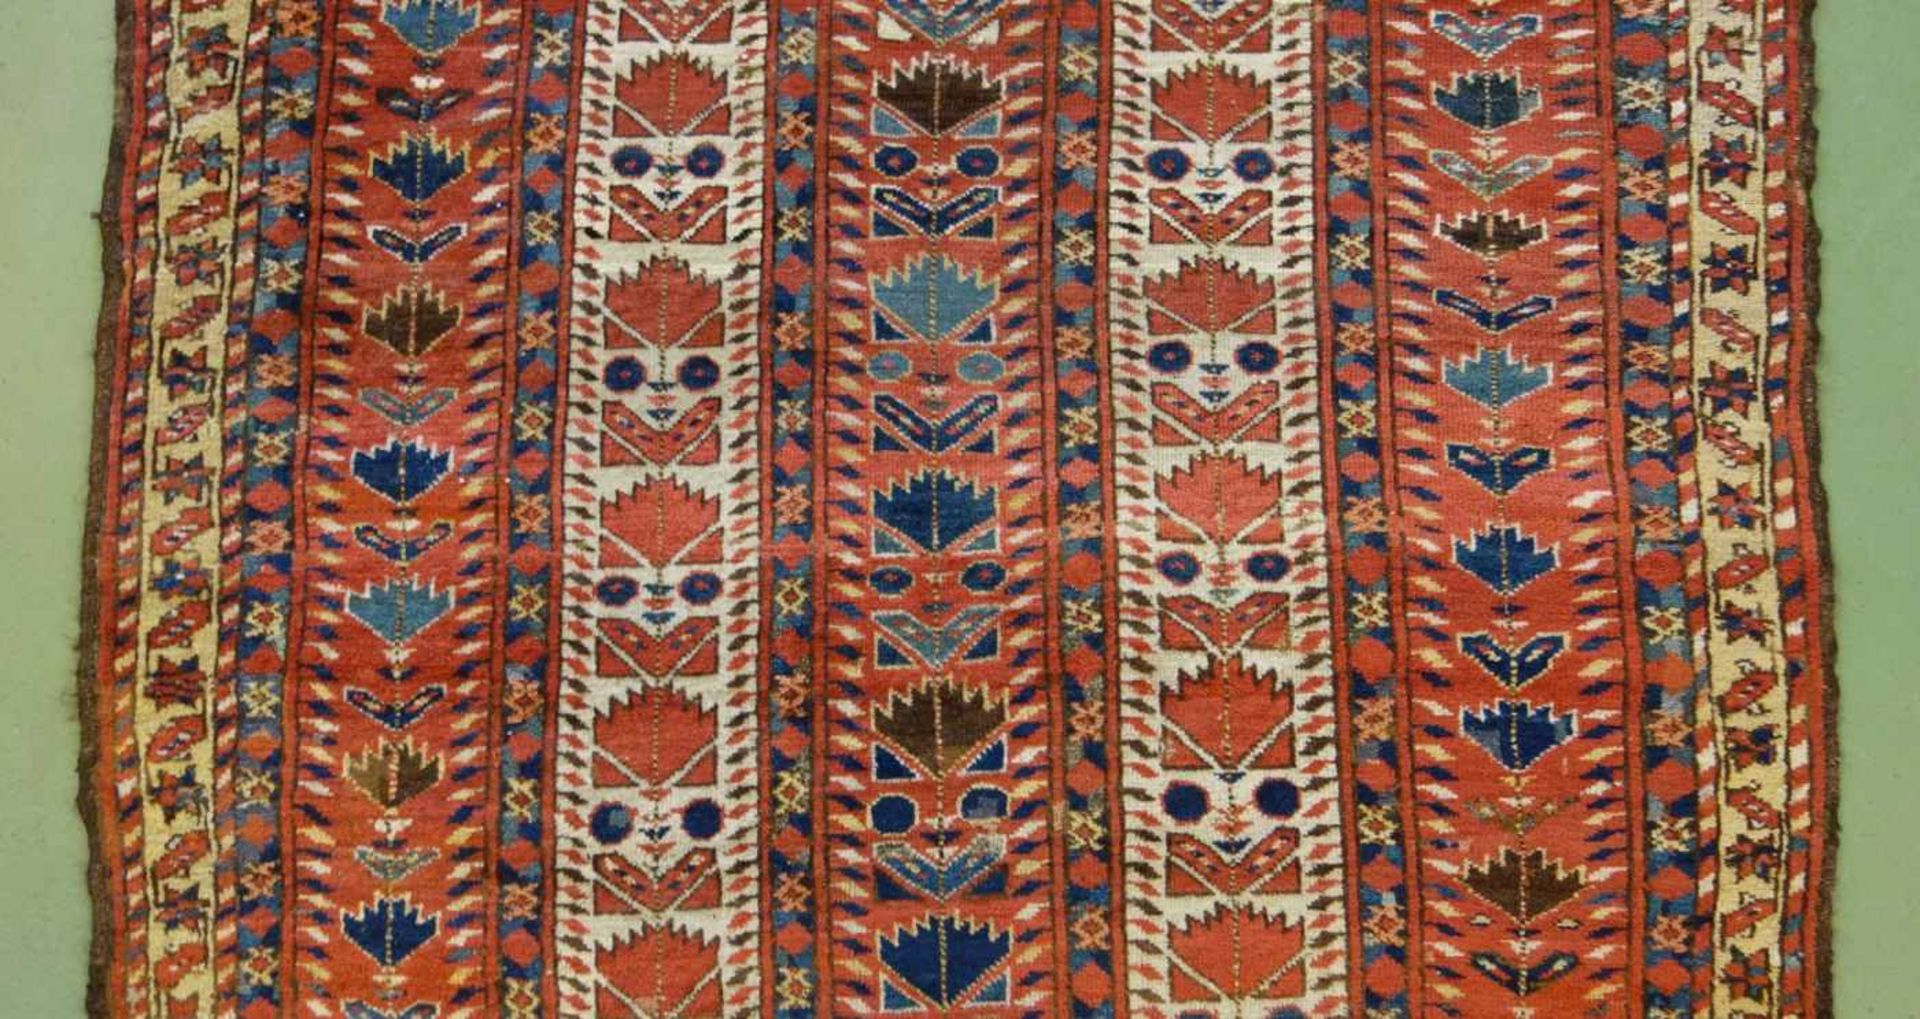 SCHMALER BESCHIR GEBETSTEPPICH / prayer rug, wohl 2. H. 19. Jh., Turkmenistan / Ersari-Beschir ( - Image 19 of 24